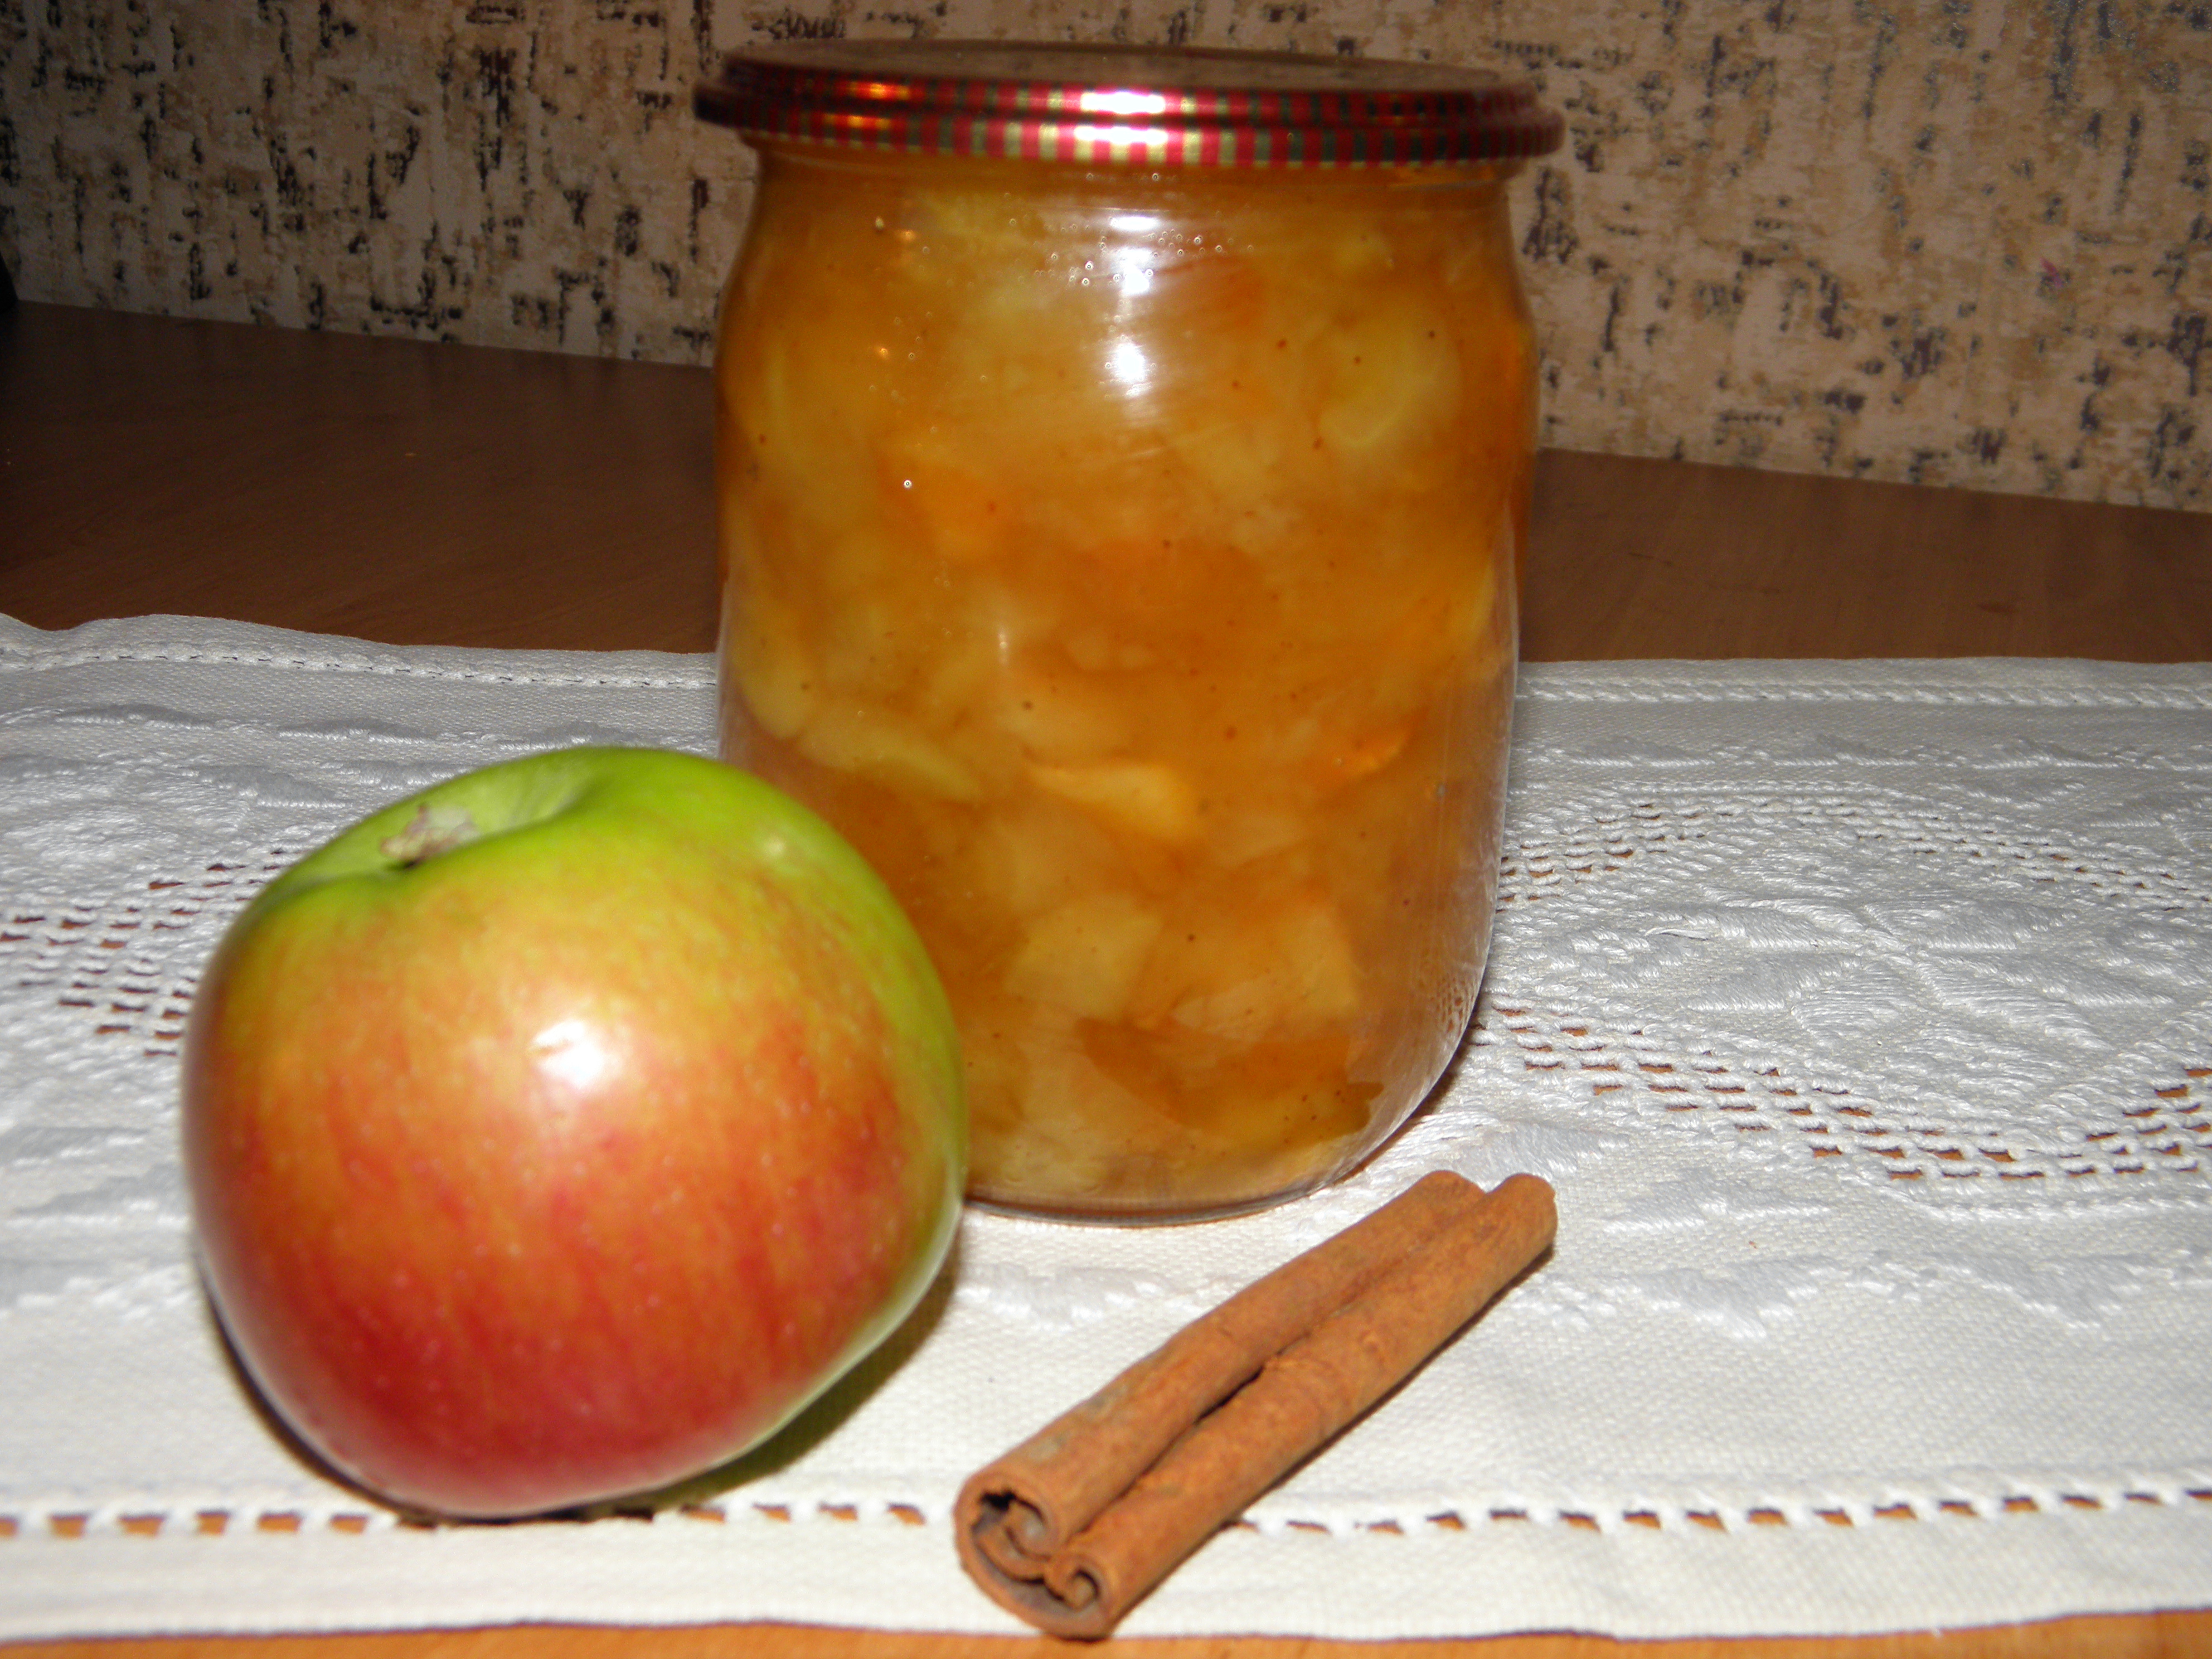 Как приготовить повидло из яблок в домашних условиях: простые рецепты заготовки на зиму